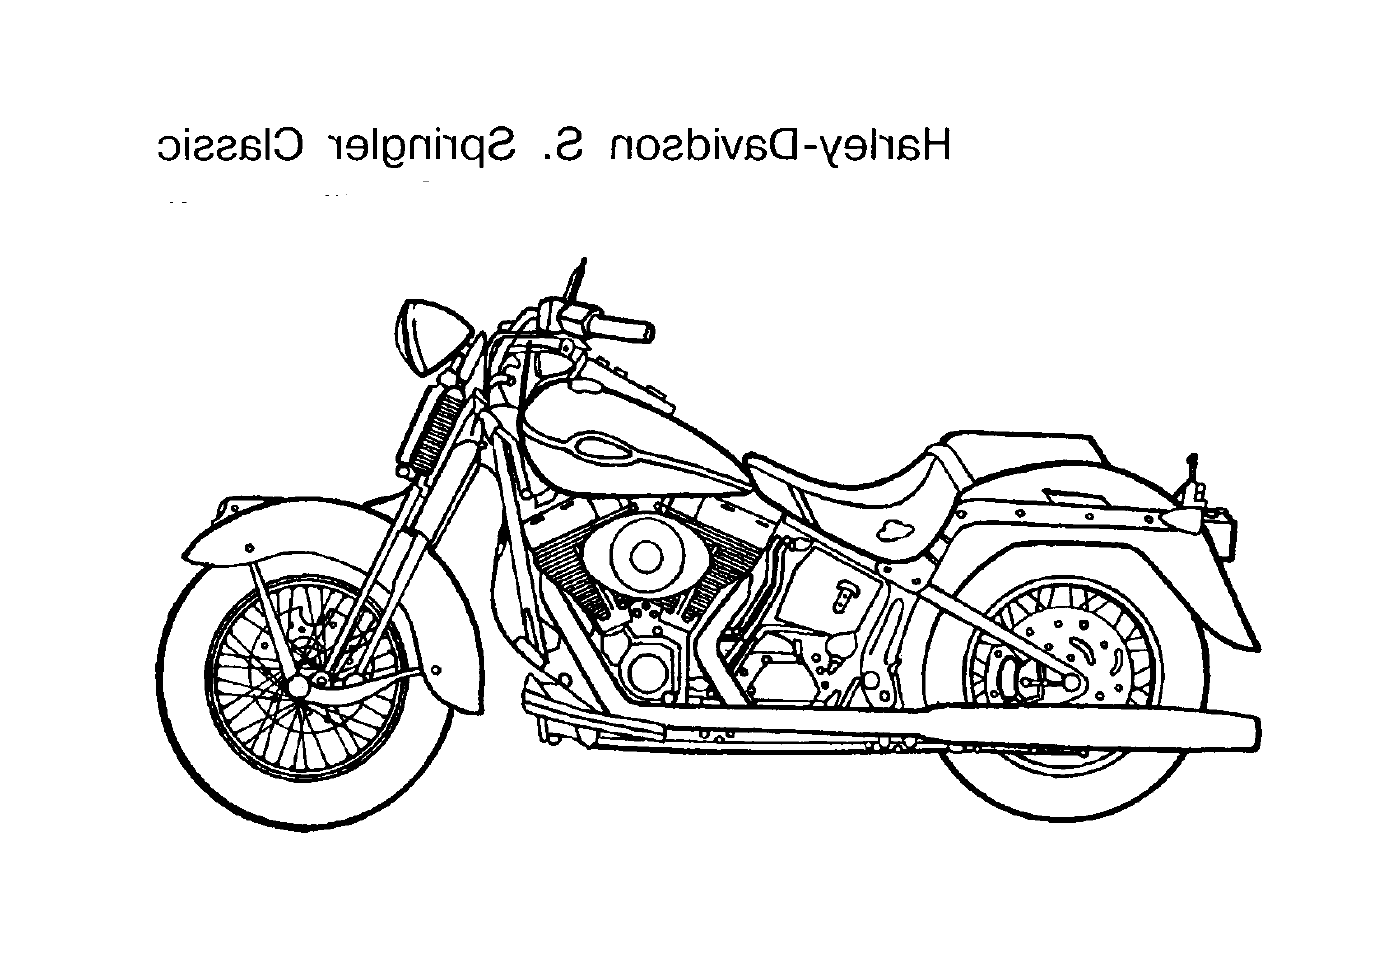  Número da motocicleta 27 